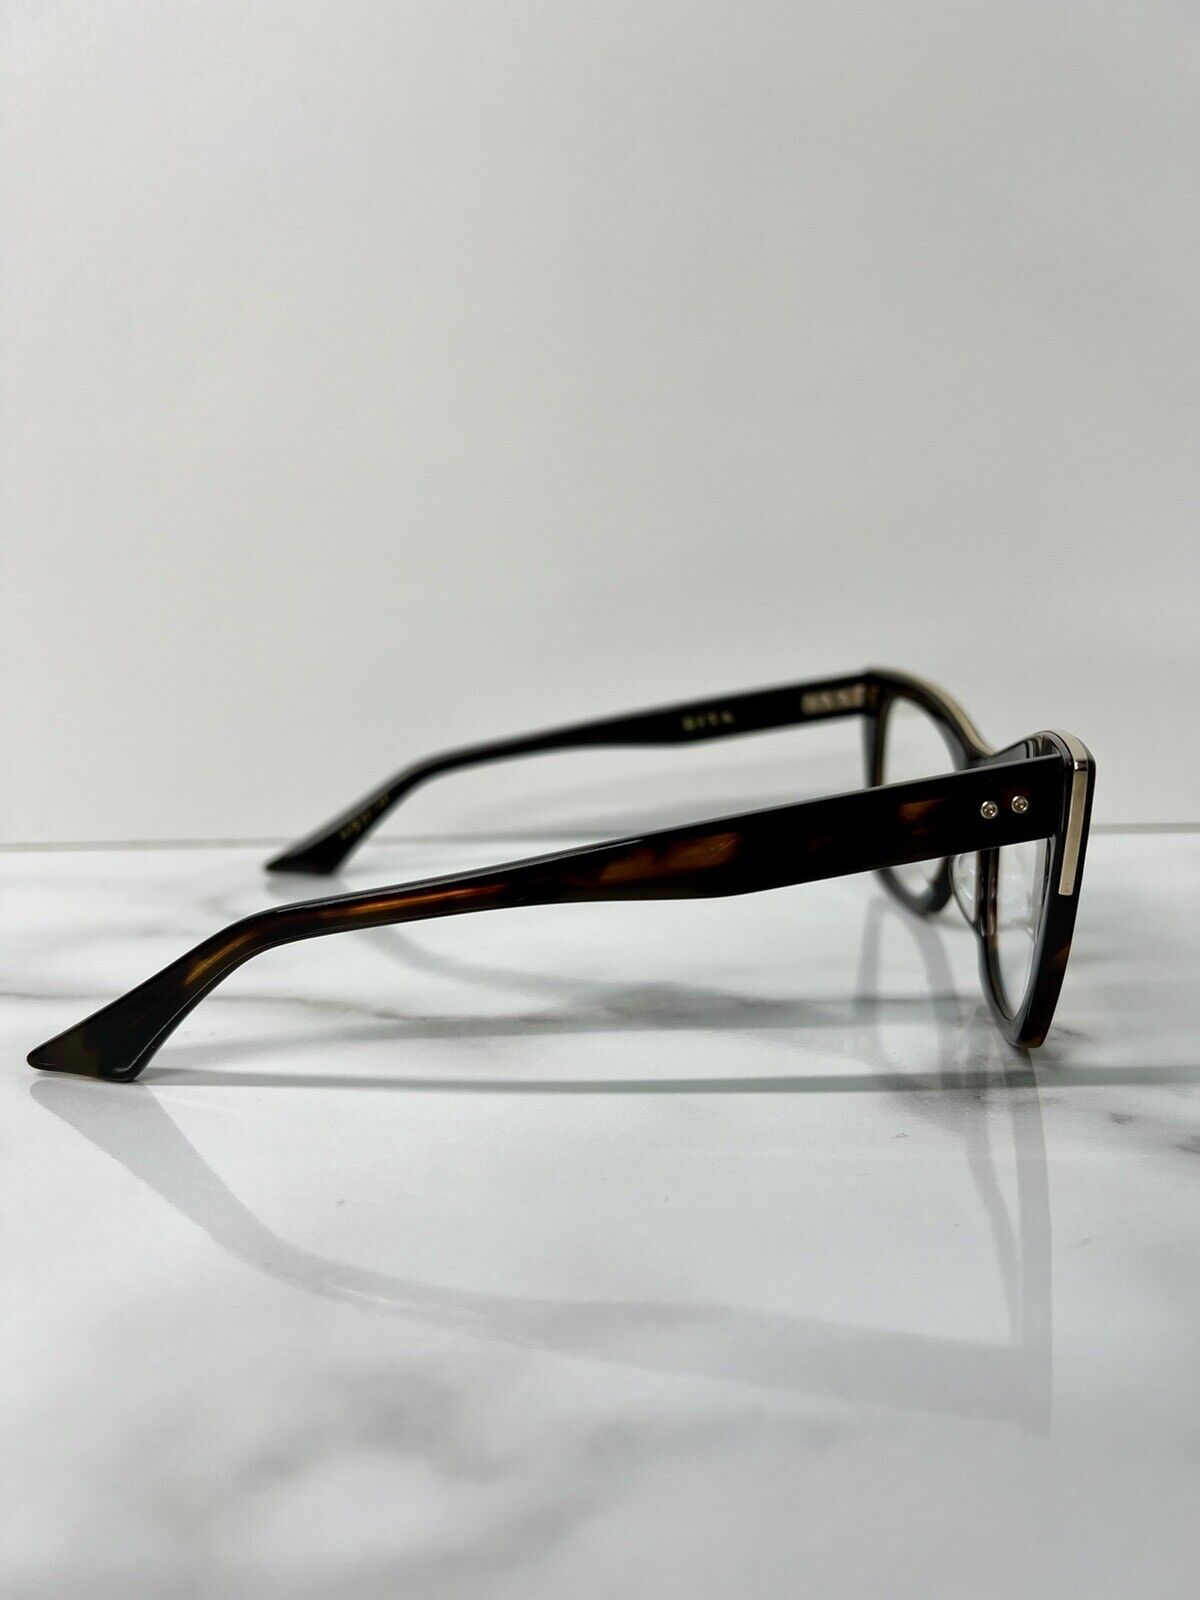 Dita Showgoer Glasses Frames Designer Eyeglasses Tortoise Shell